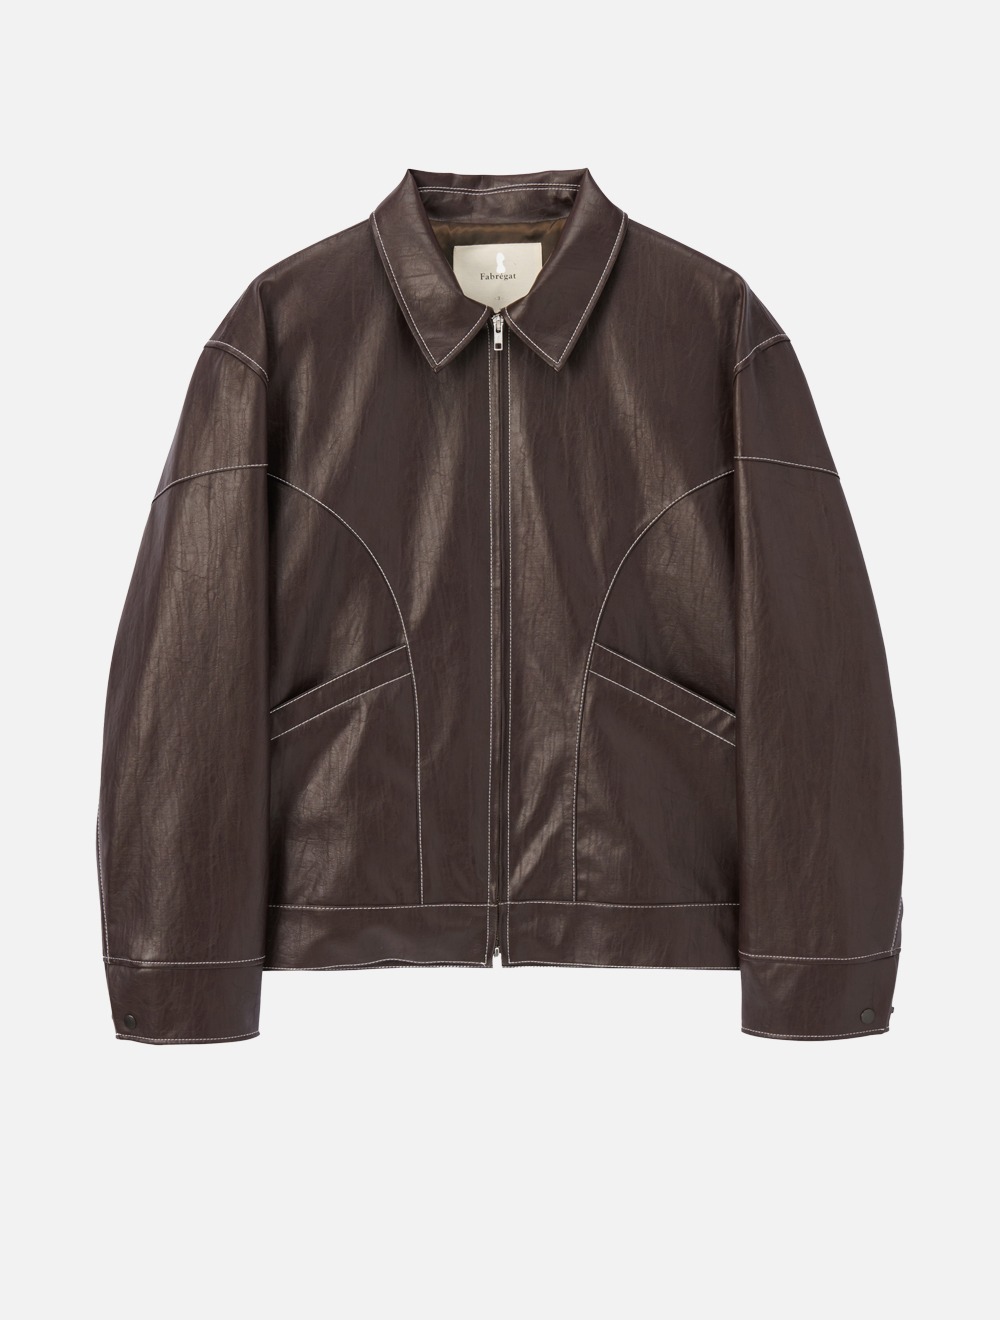 David Stitch Pocket Leather Jacket (Dark Brown)